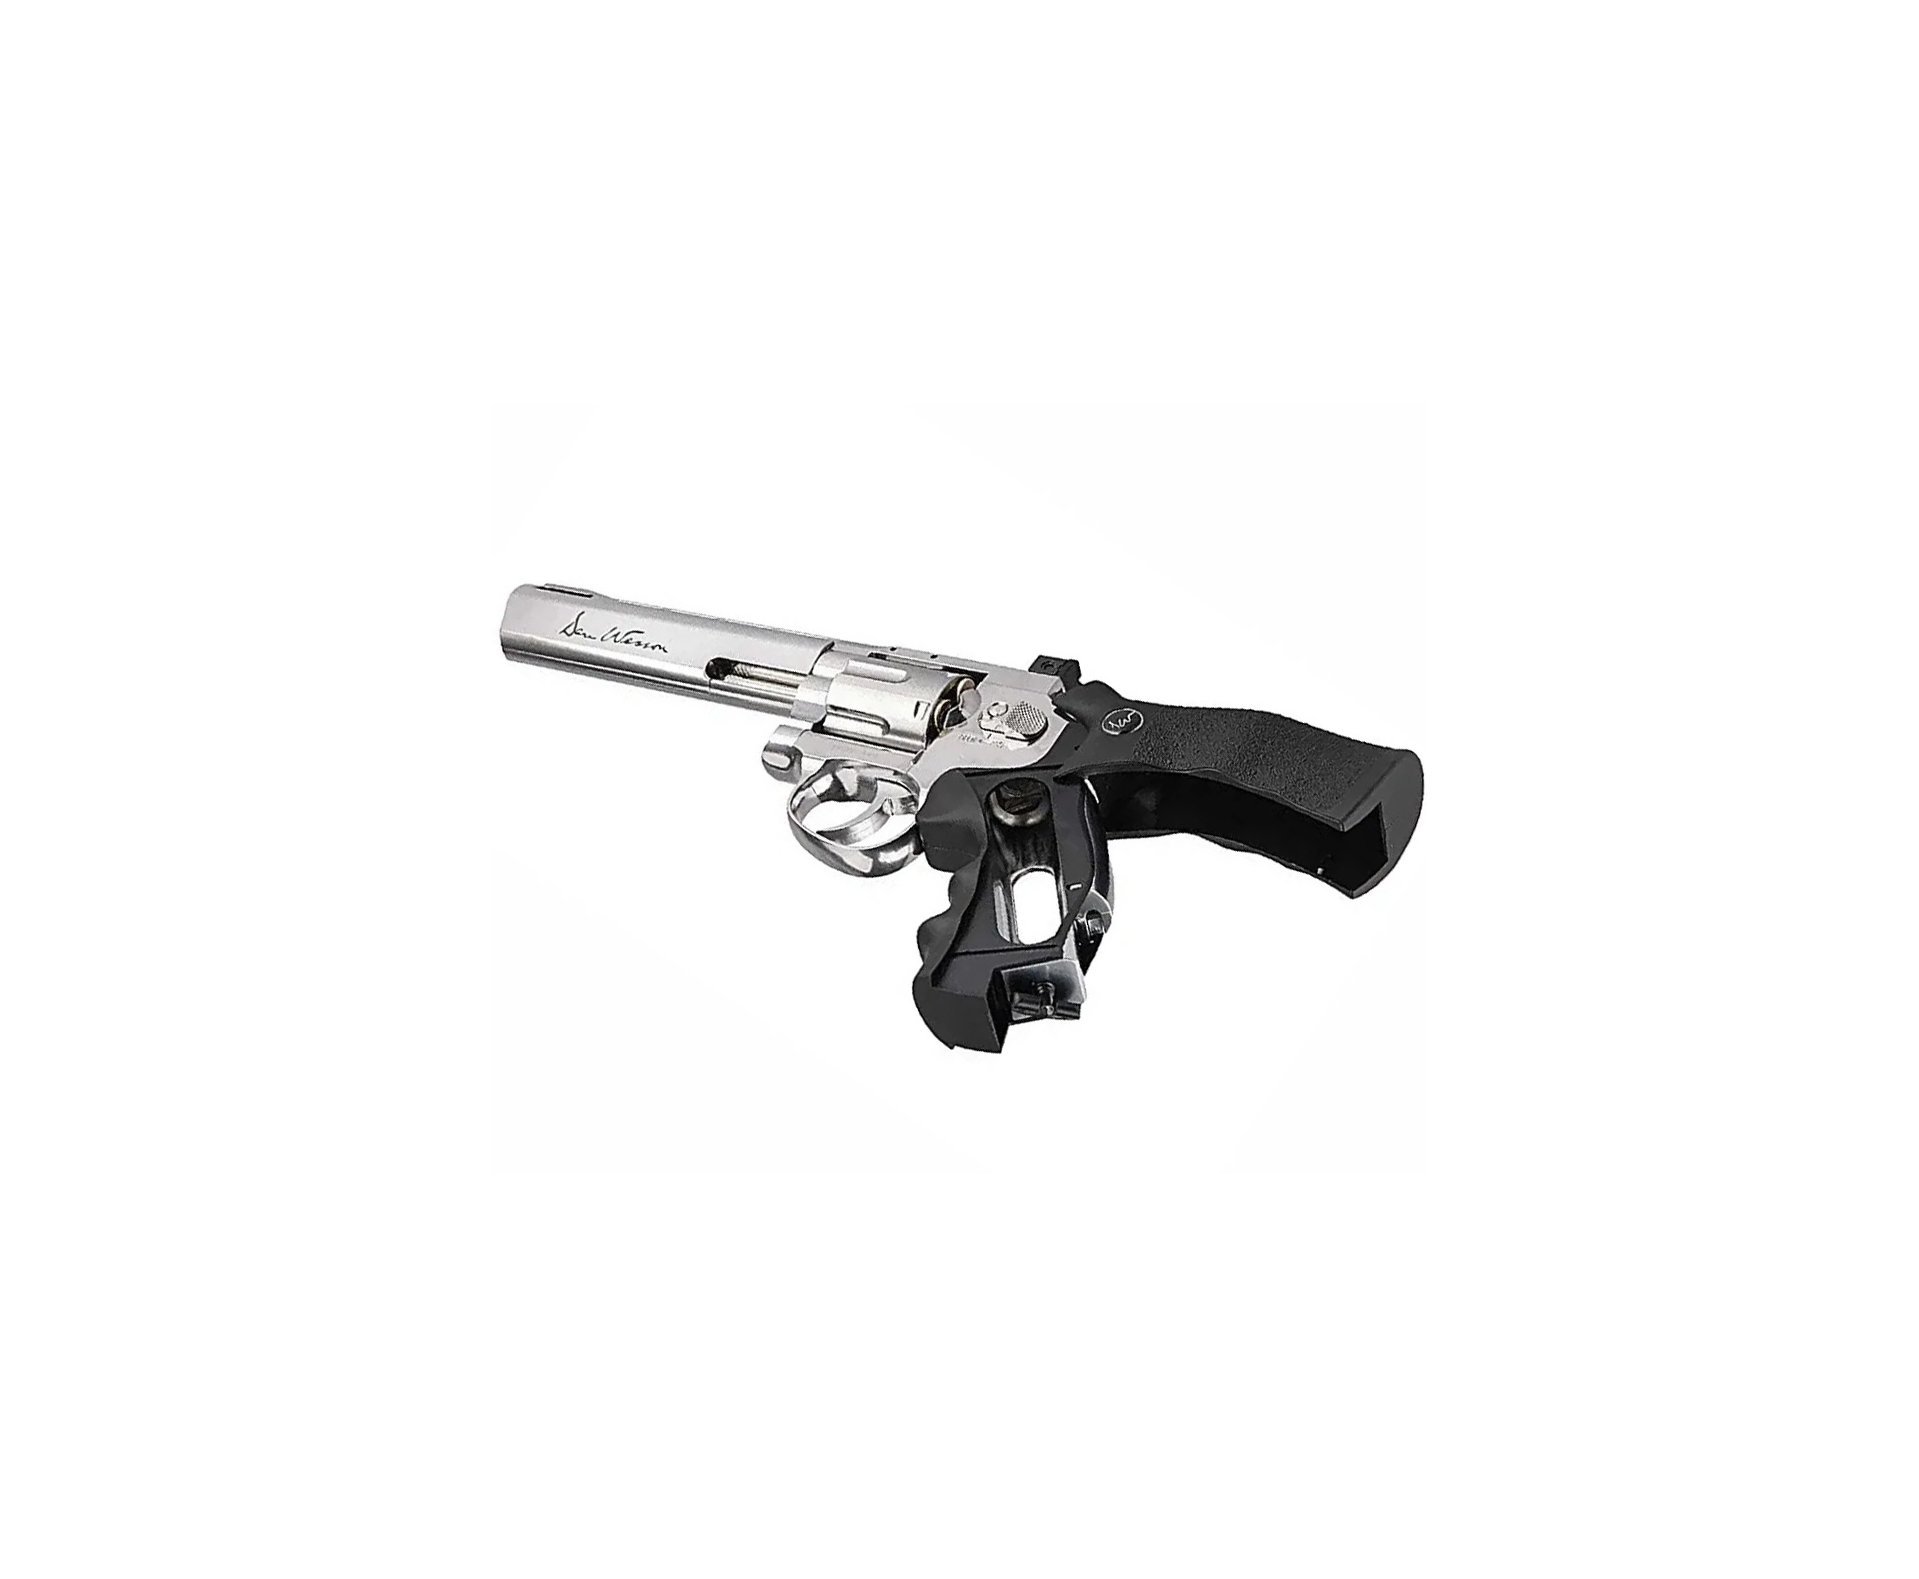 Revólver De Pressão Co2 Dan Wesson 6" Full Metal Inox 6 Tiros Chumbinho 4,5mm ASG + Co2 + Chumbinho + Alvo